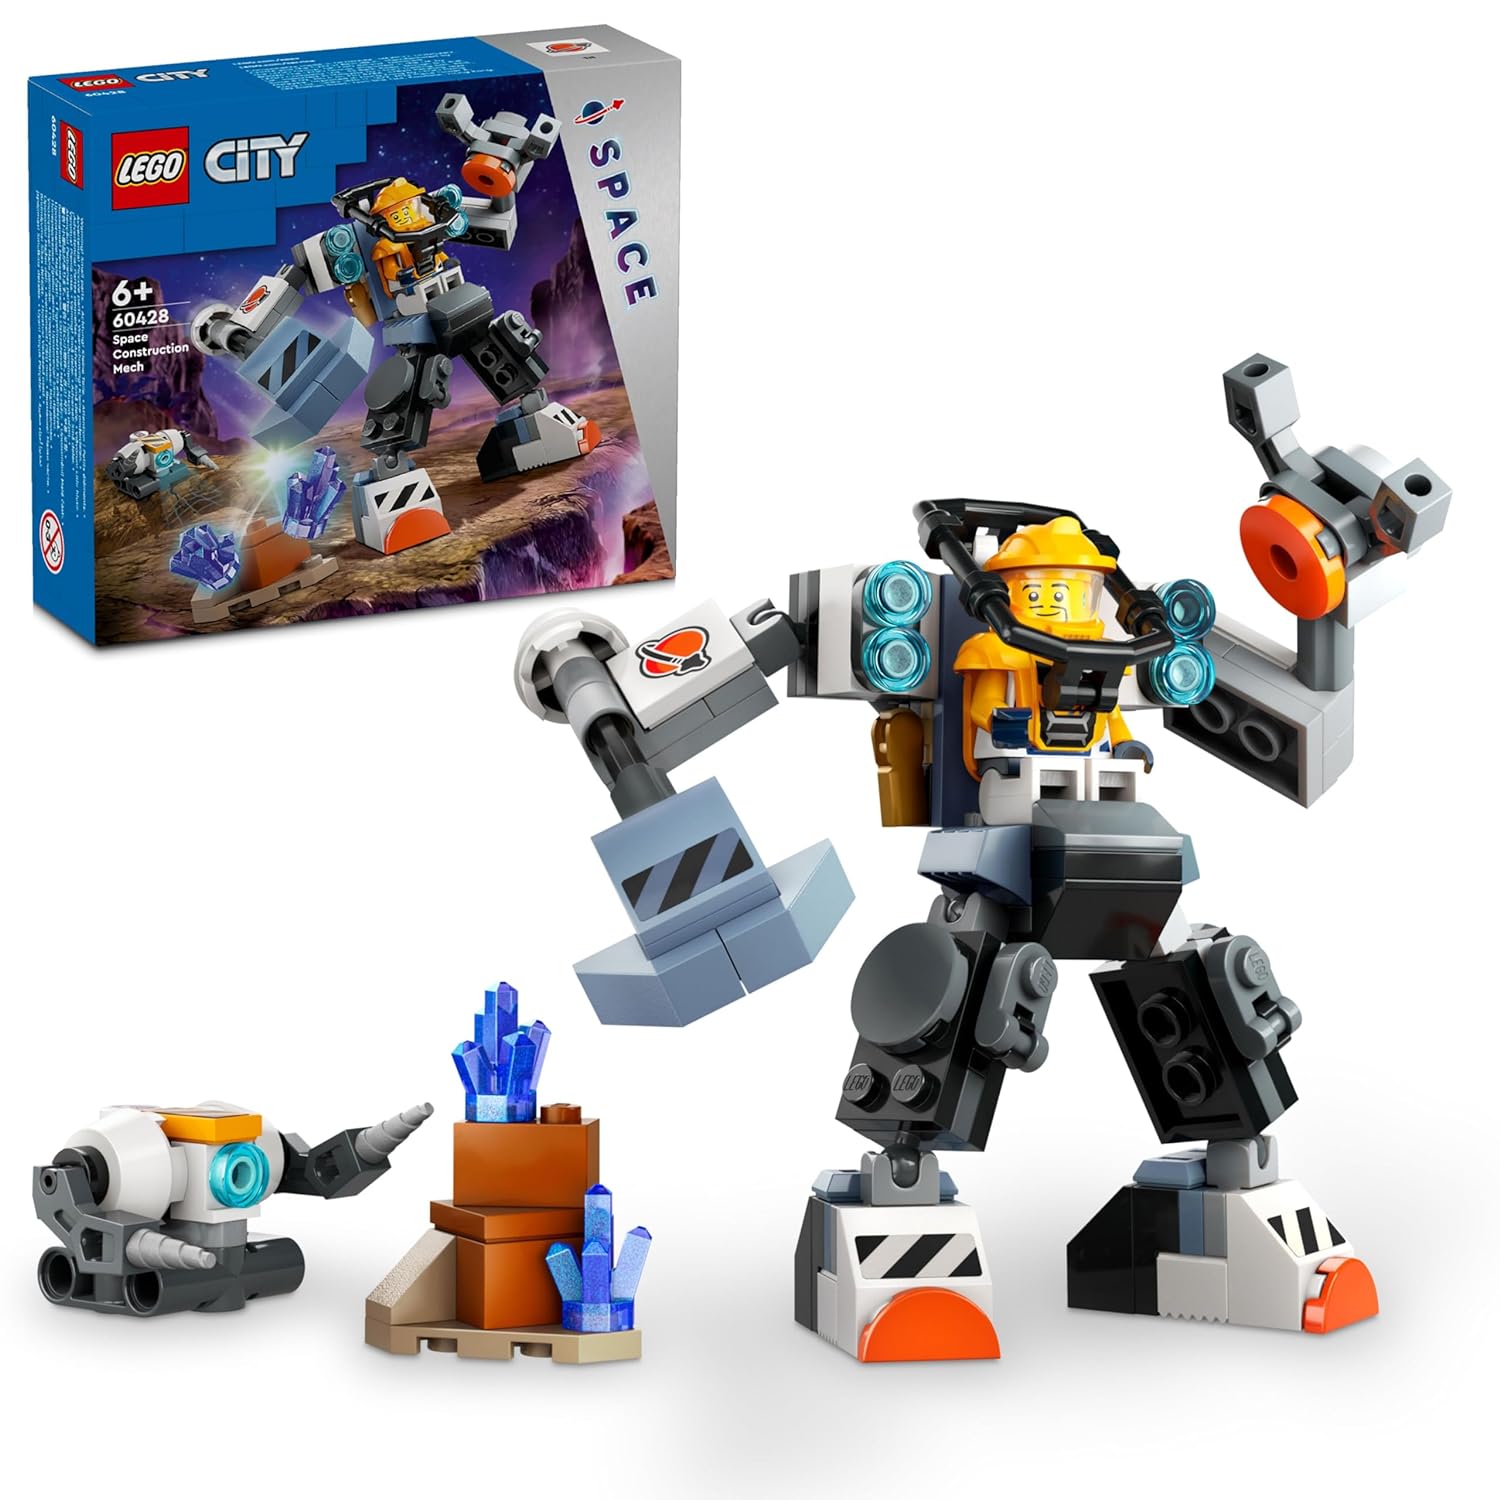 LEGO City Space Construction Mech Suit Building Kit for Ages 6+